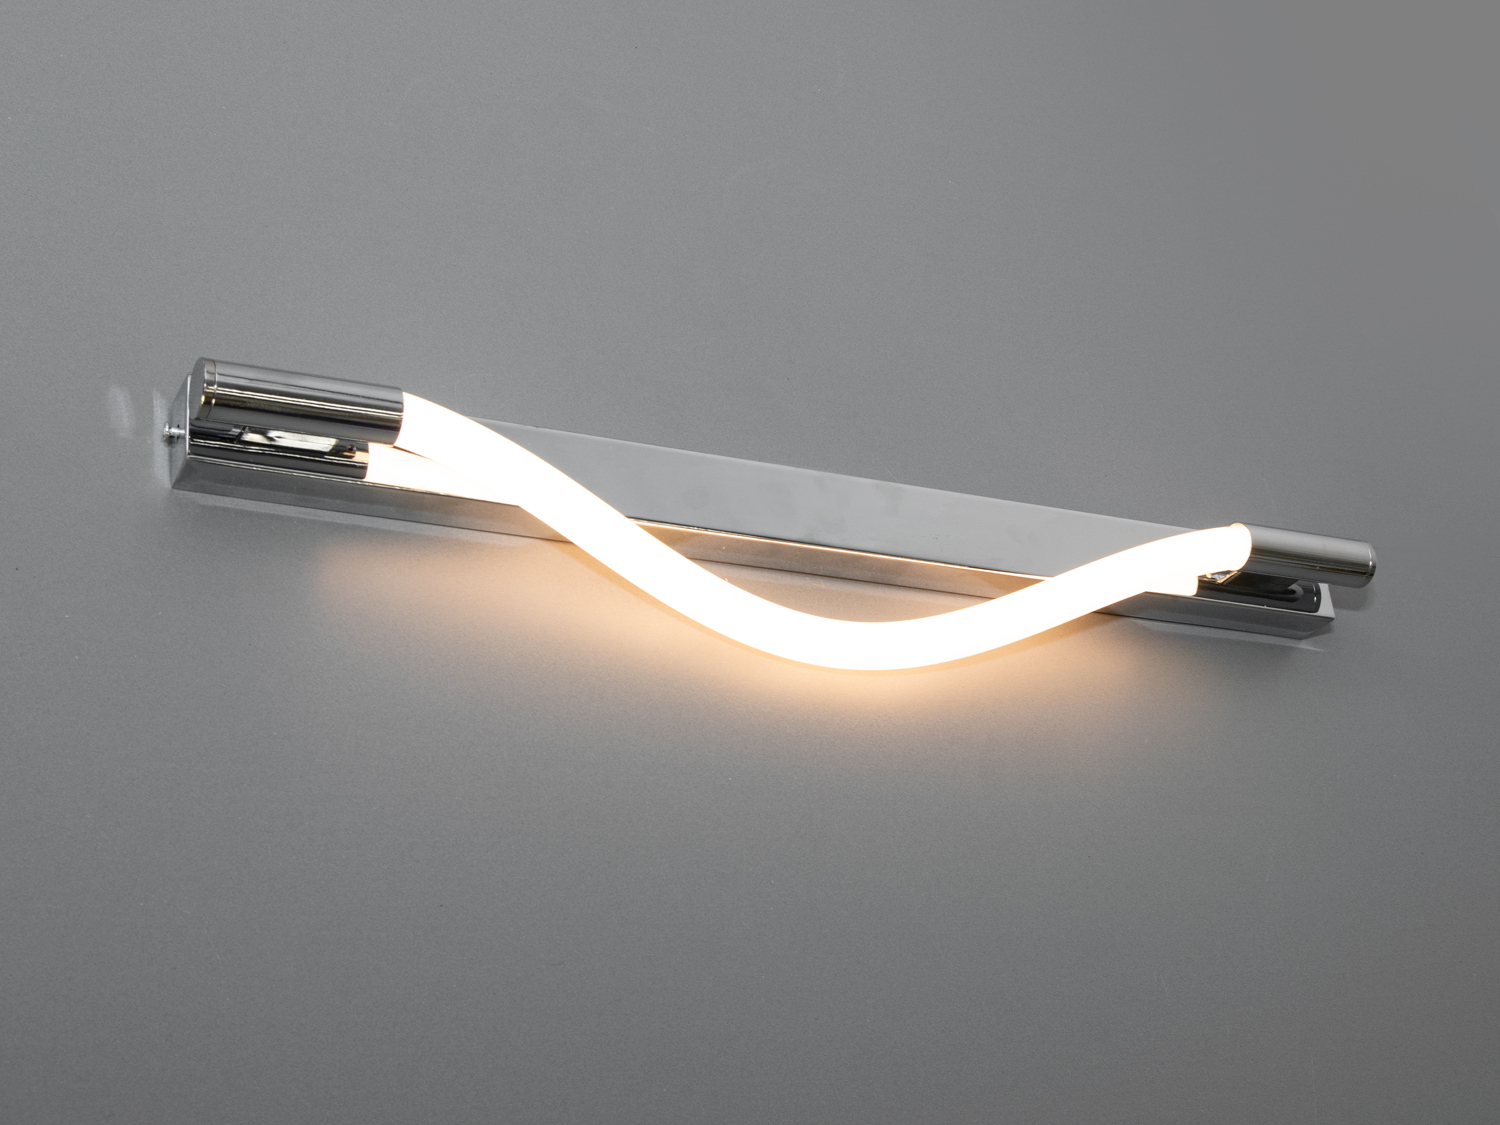 Цей світлодіодний світильник-шланг на 5 ват — це не просто джерело світла, а символ сучасного дизайну та інноваційності.
Торгова марка 